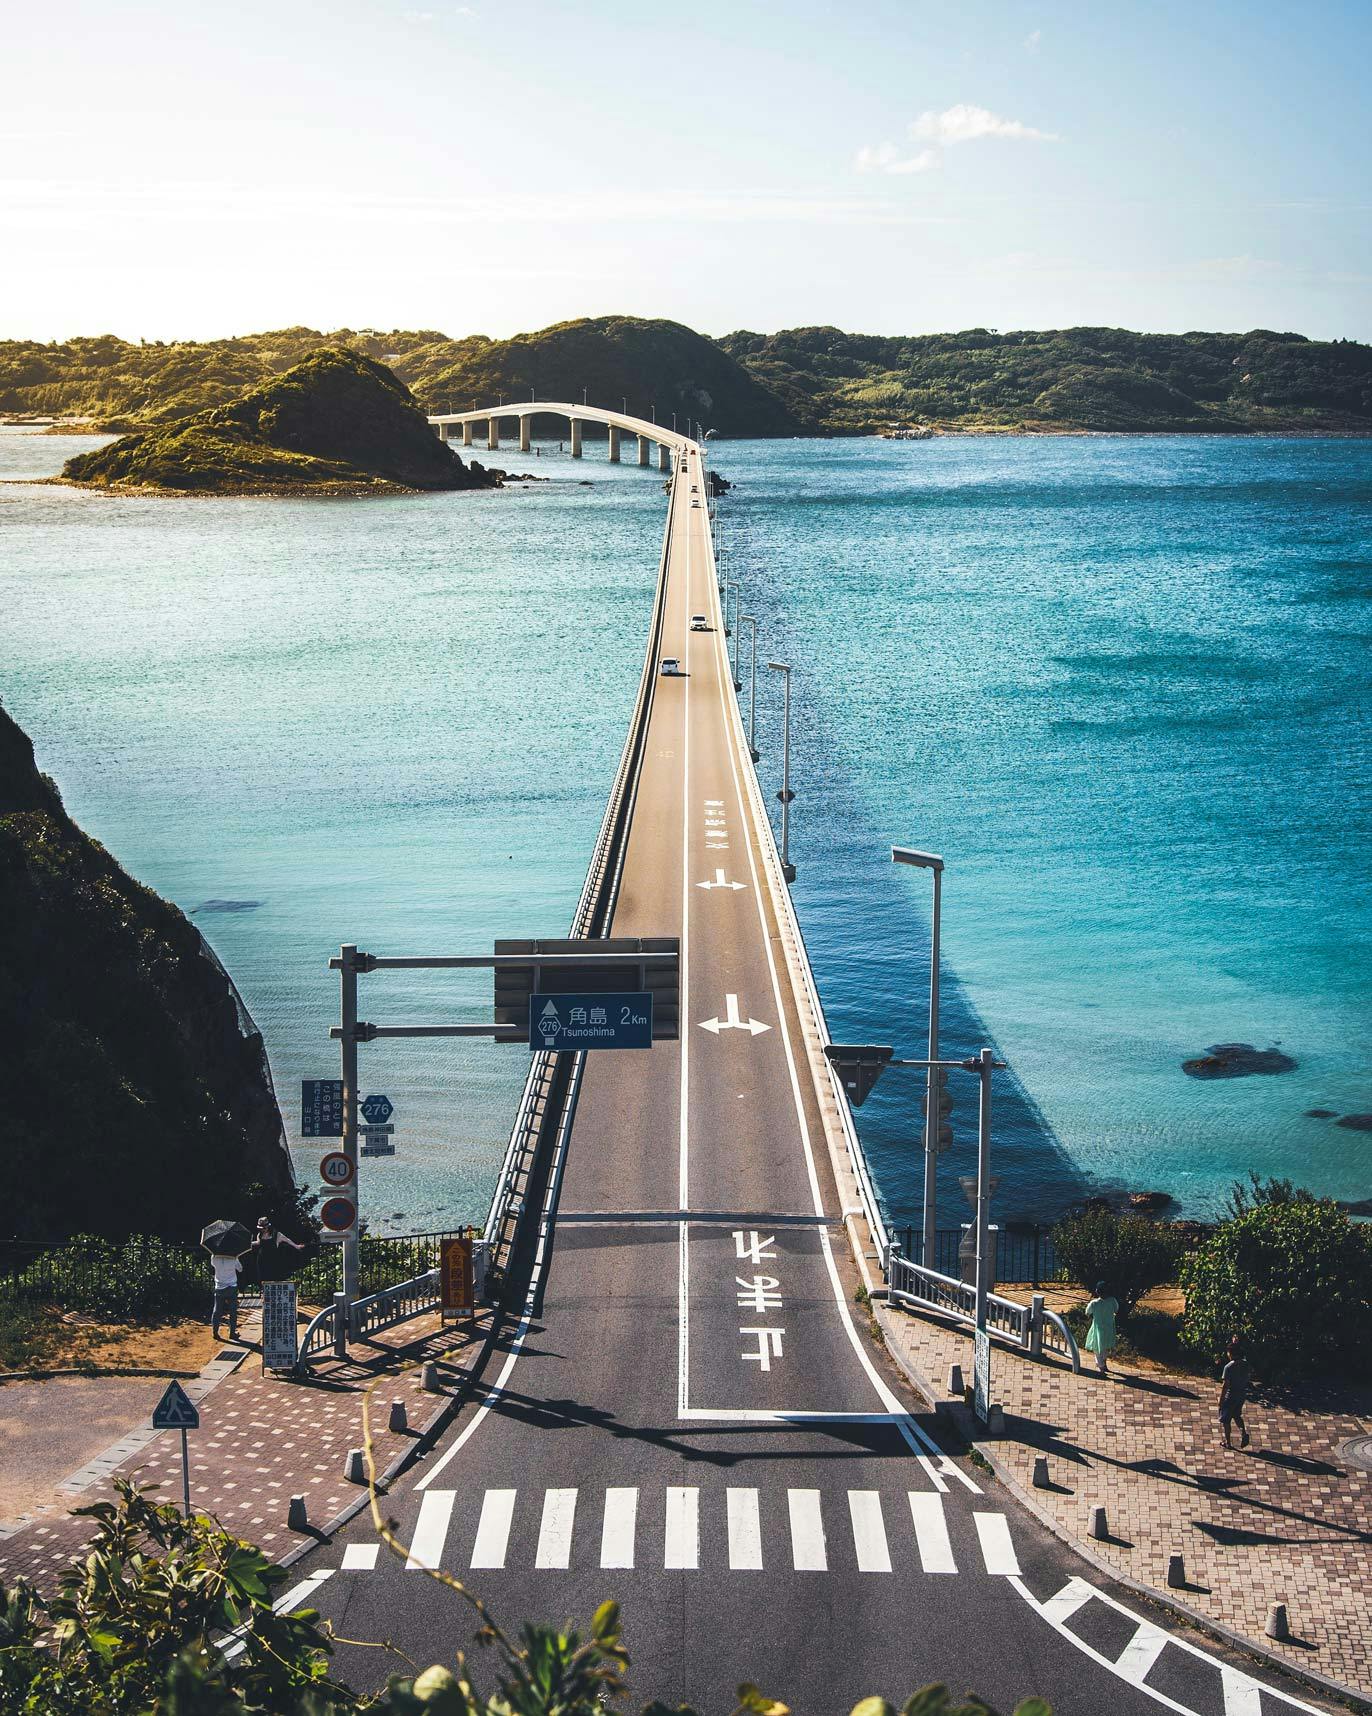 Tsunoshima Bridge and Amageseto Strait